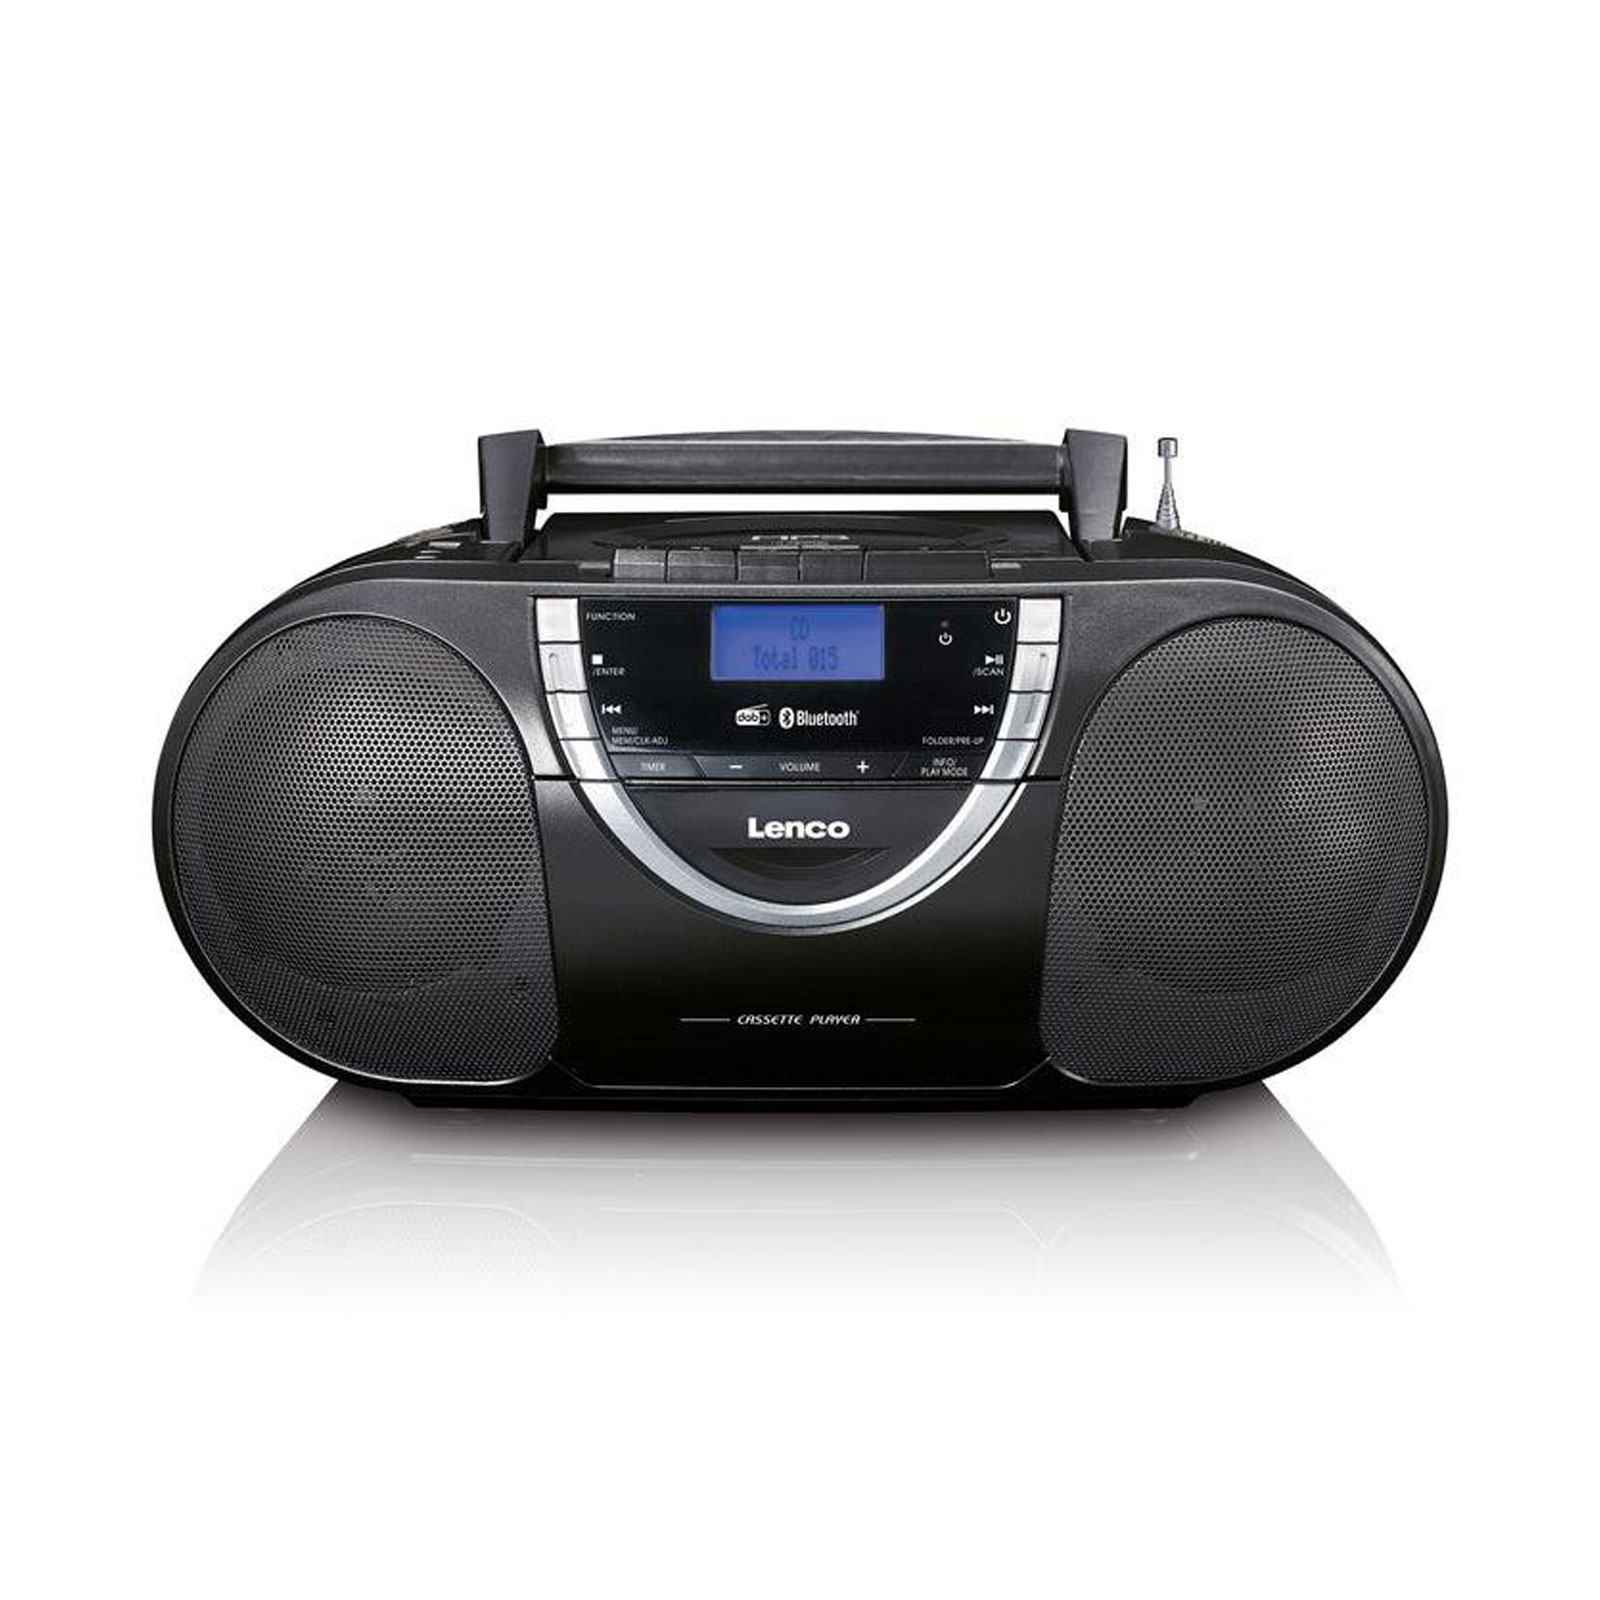 Lenco Radiorekorder mit CD-Spieler und Kassettendeck SCD 6900